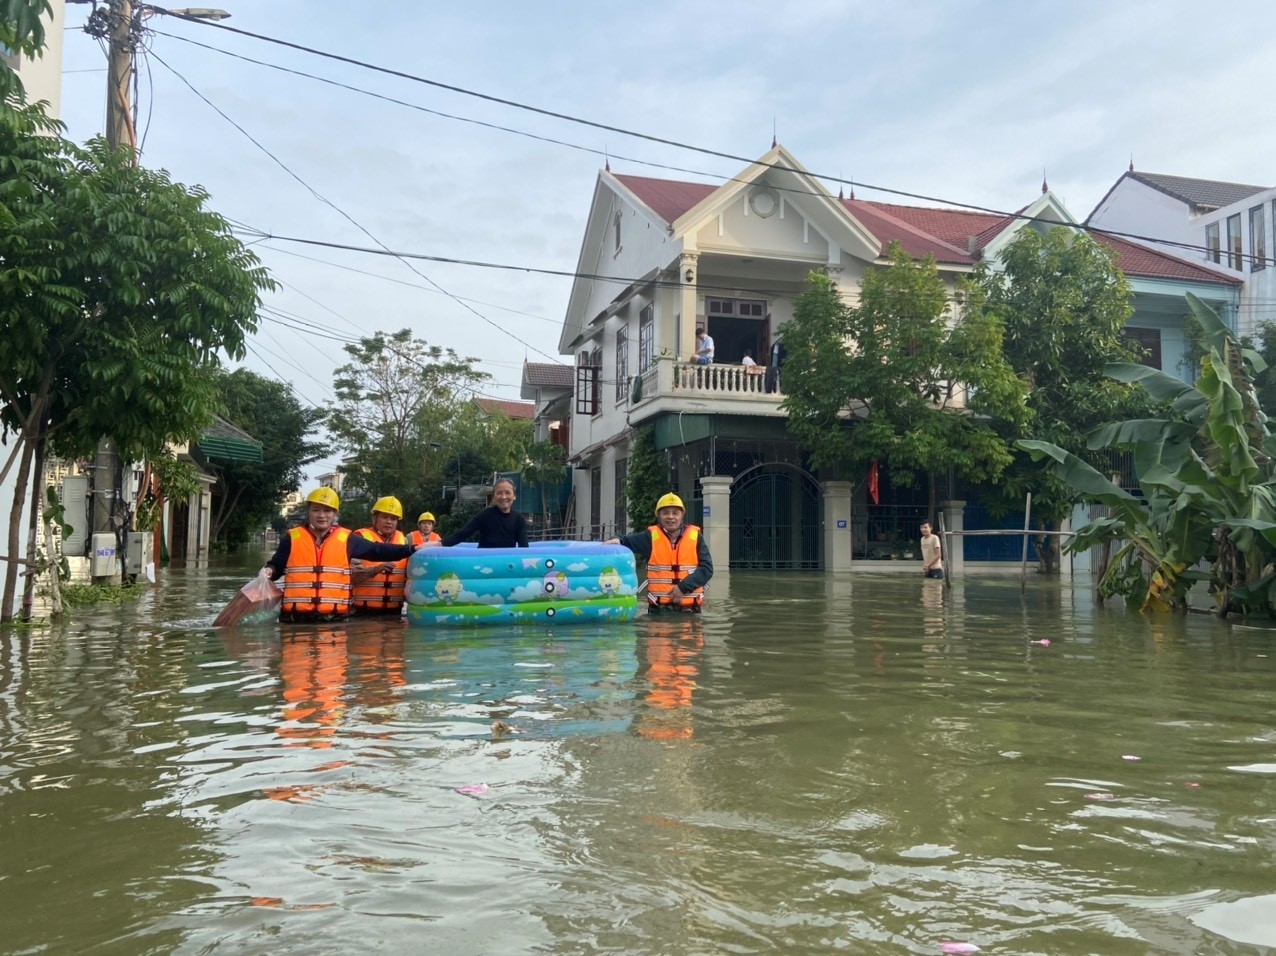 Điện lực Hà Tĩnh nỗ lực cấp điện trở lại và hỗ trợ nhân dân sau mưa lũ